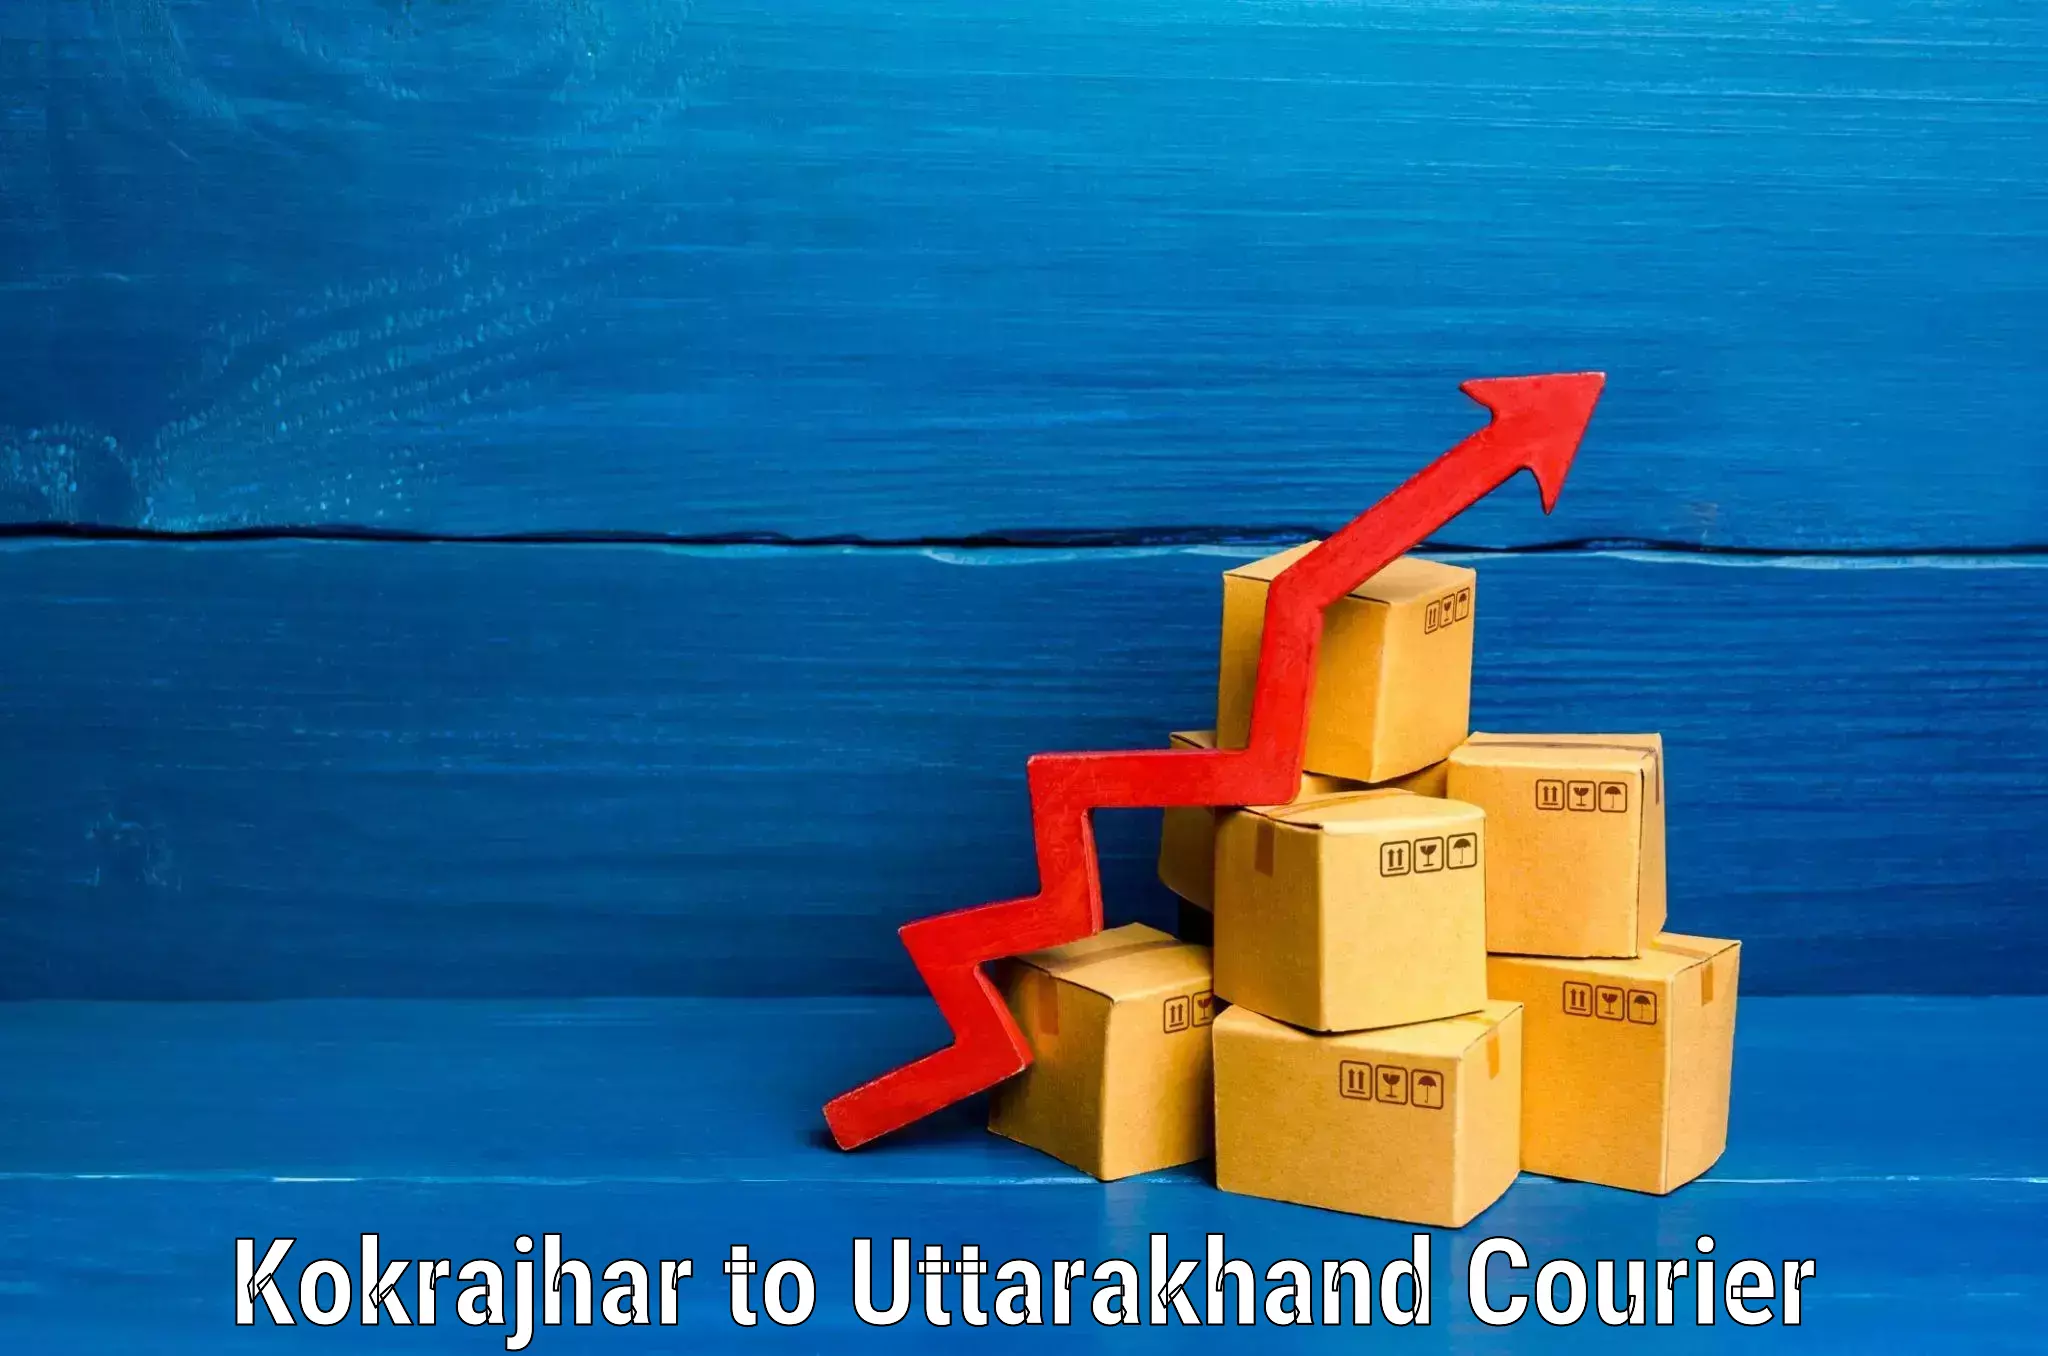 Baggage transport network Kokrajhar to Uttarakhand